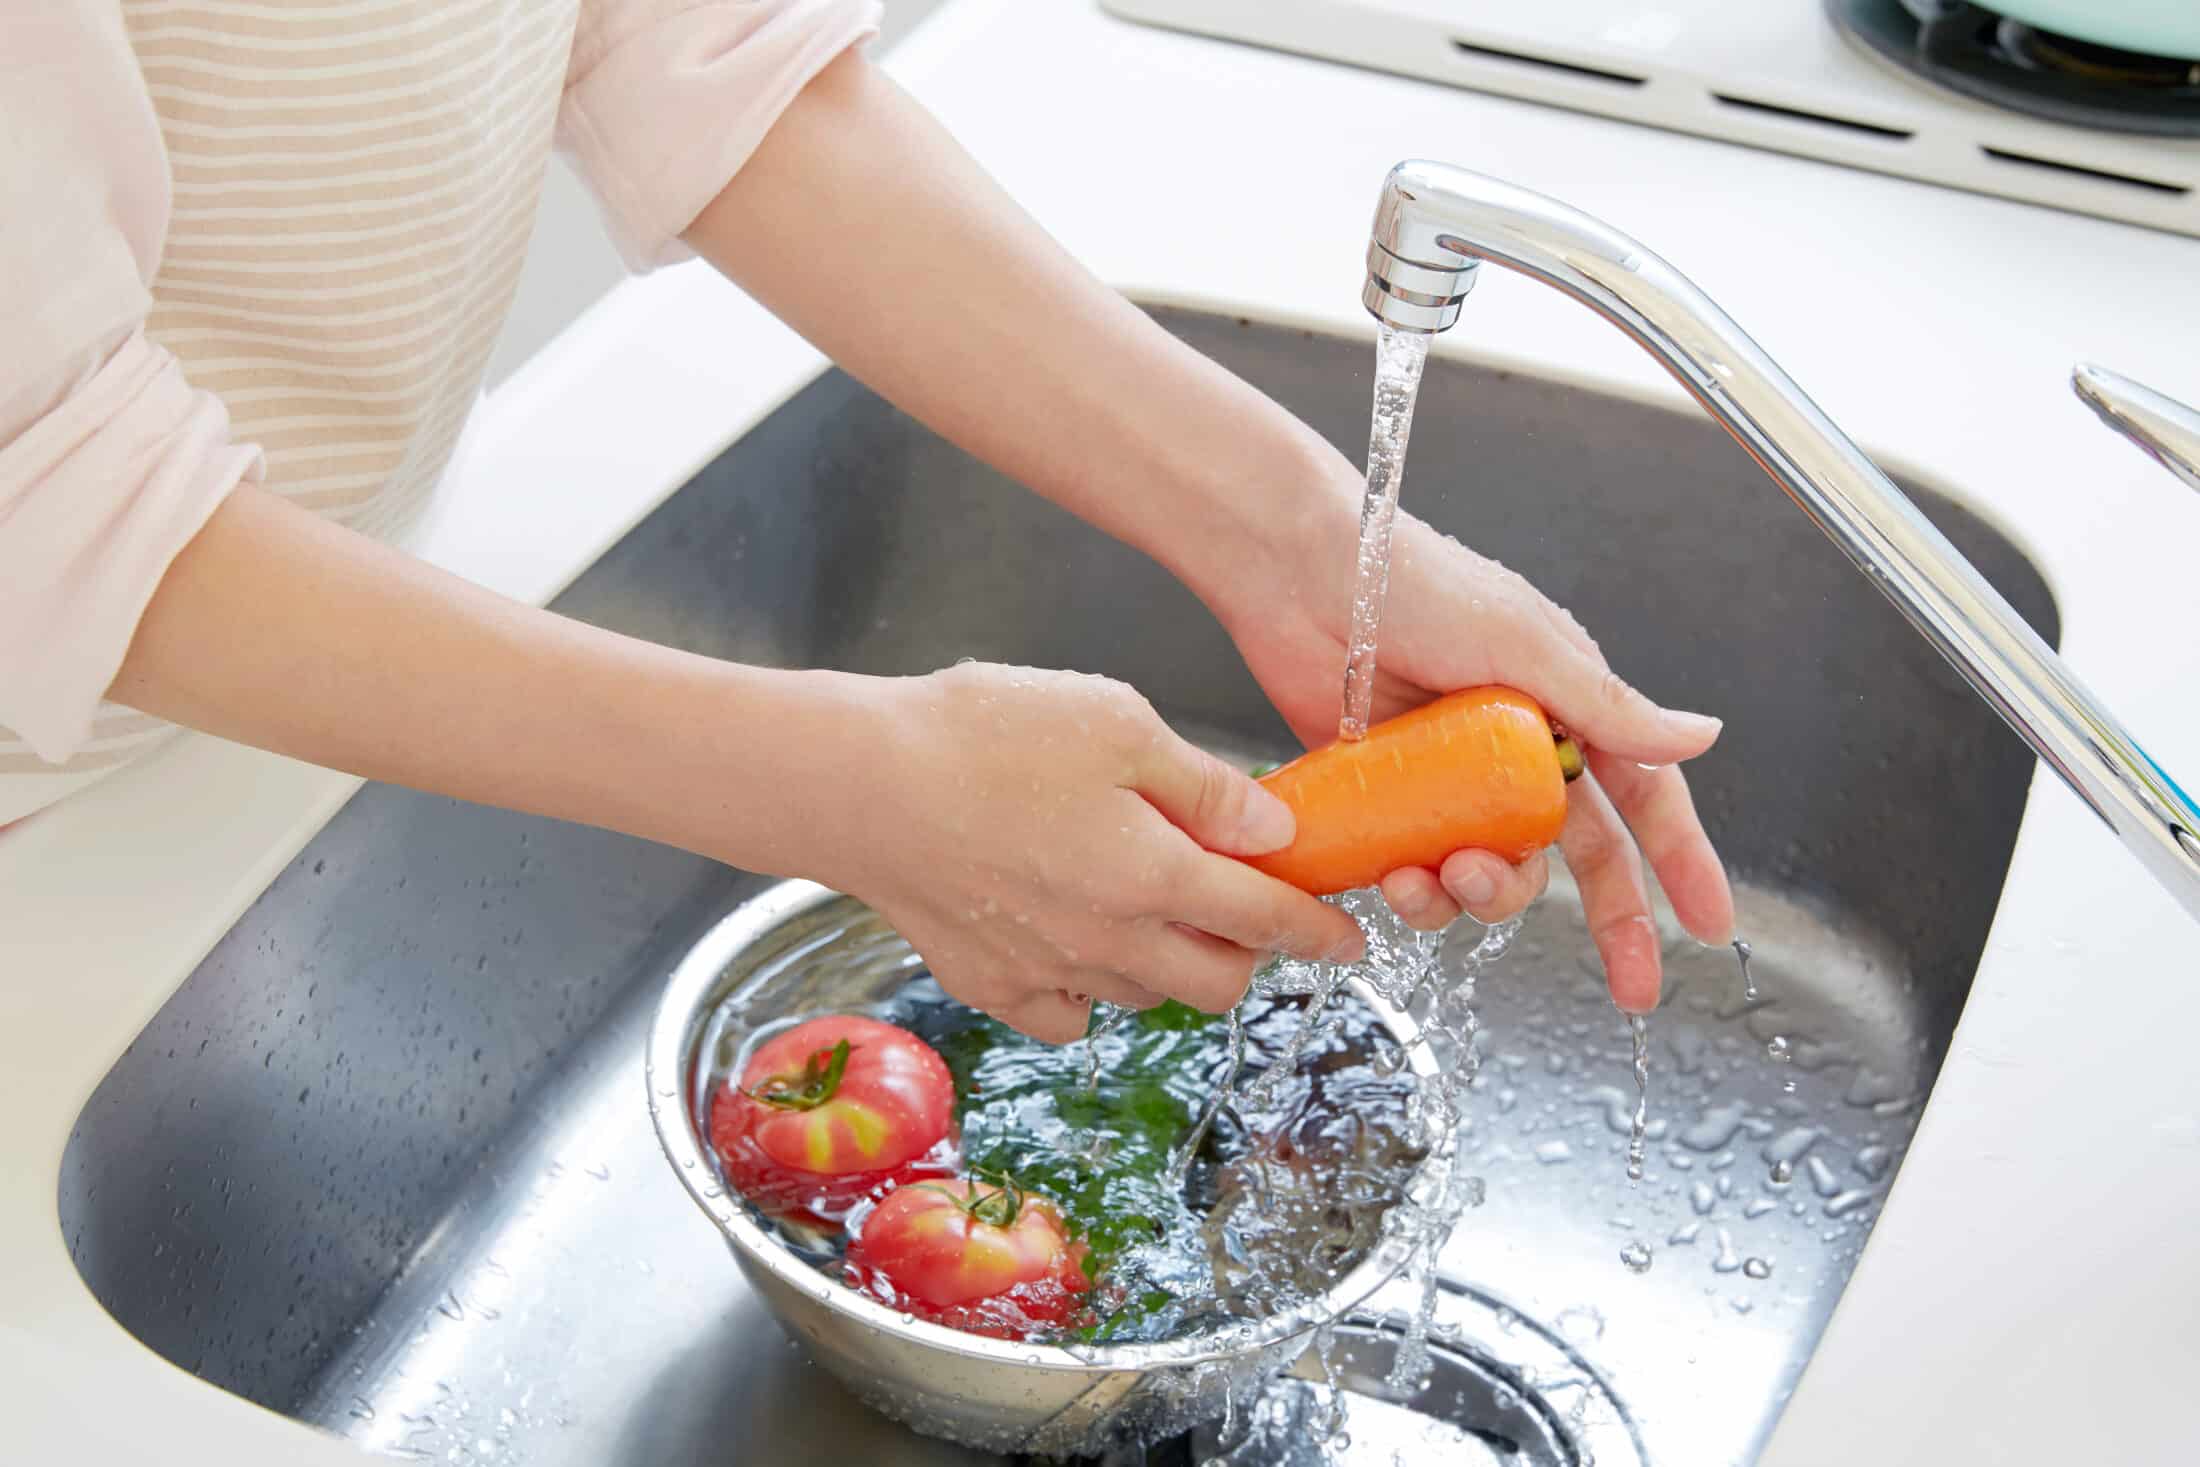 Így kell tökéletesen megmosni a zöldségeket, gyümölcsöket